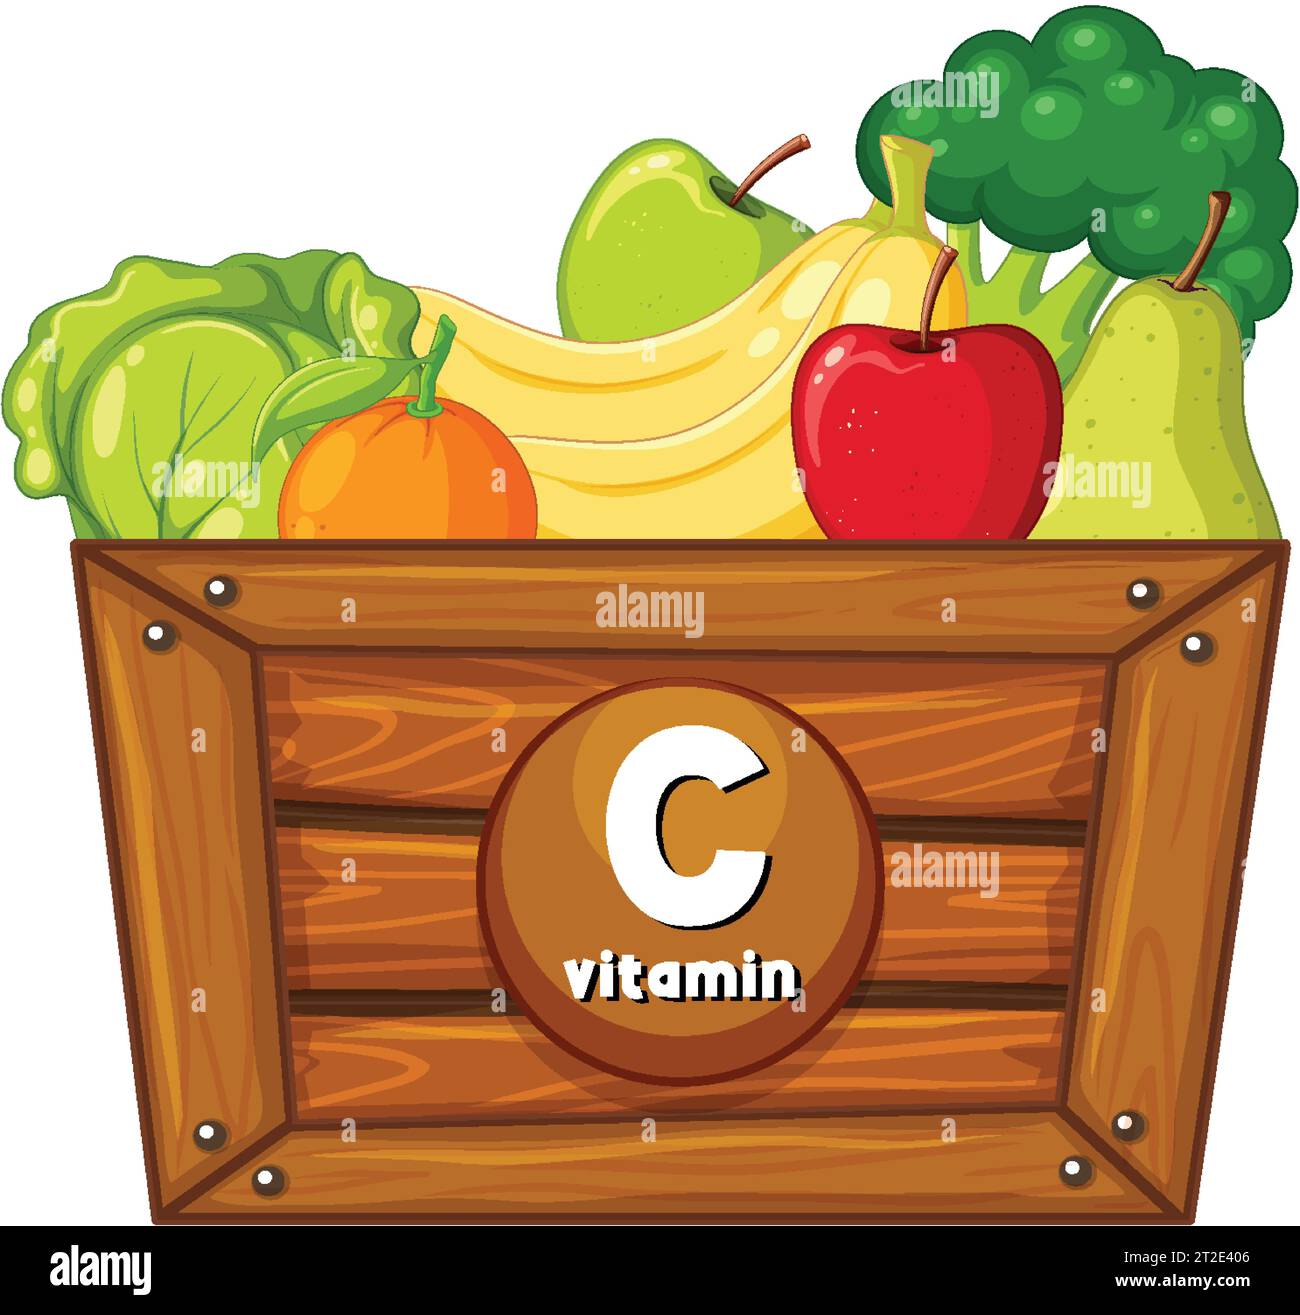 Illustrazione di cartoni animati vettoriali di alimenti contenenti vitamina C. Illustrazione Vettoriale